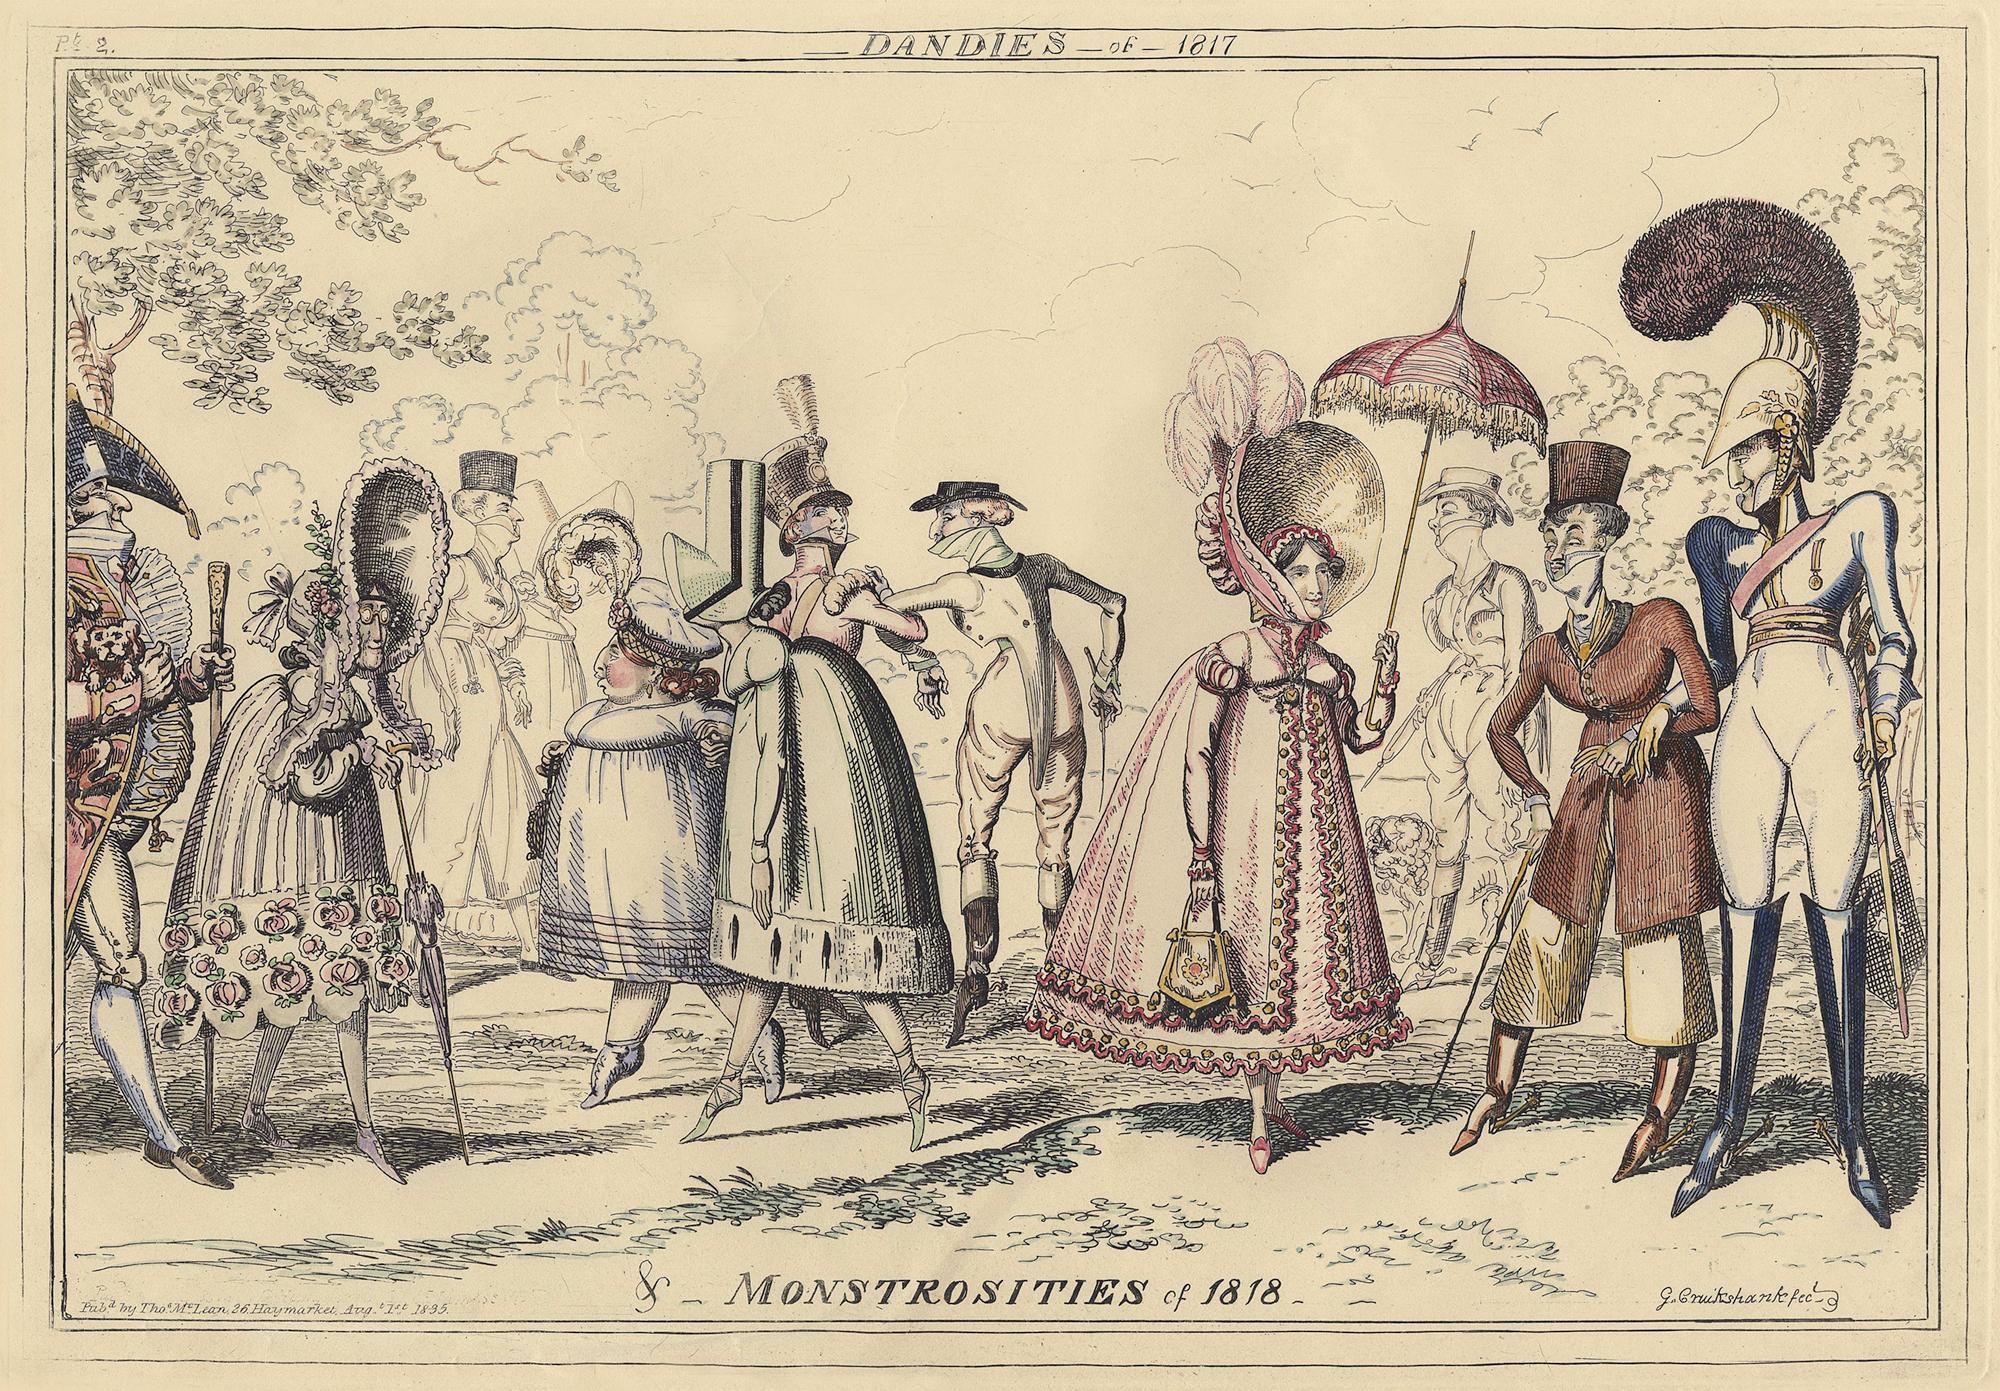 Dandies-of-1817, de Monstrosities